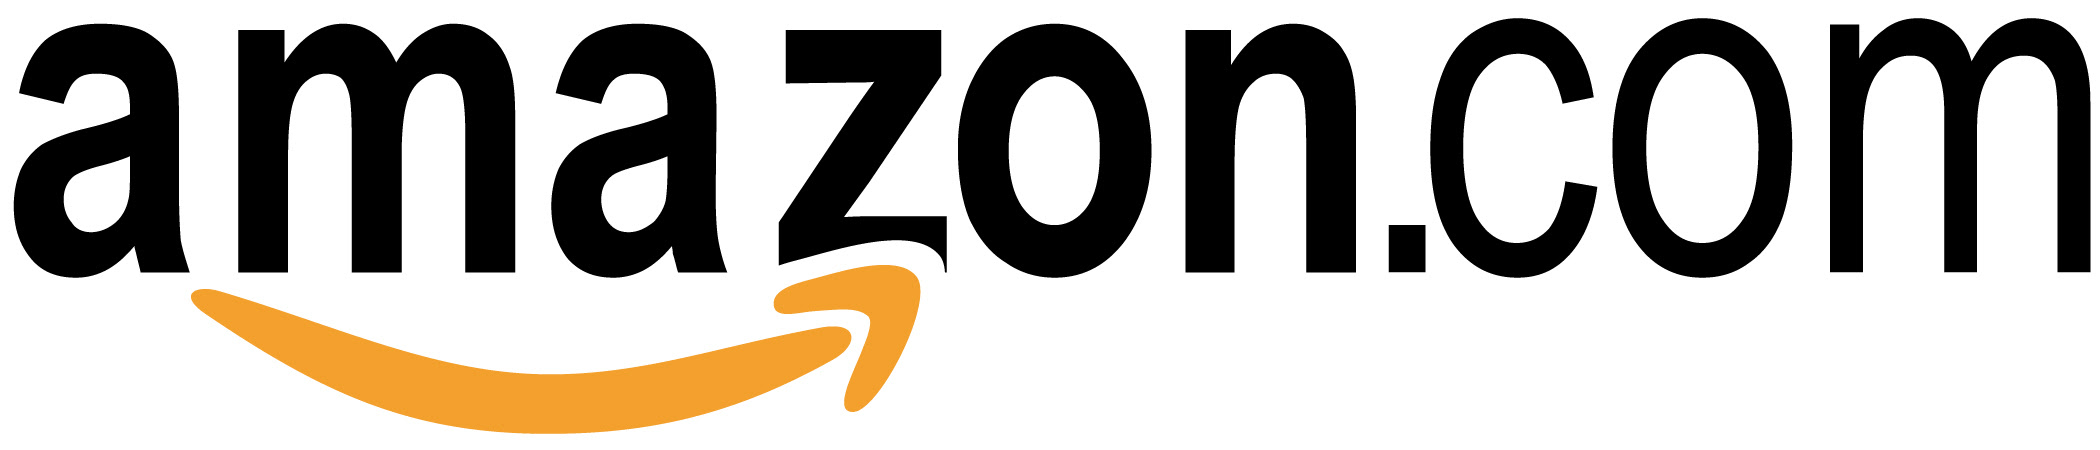 Amazon Web Services vector lo